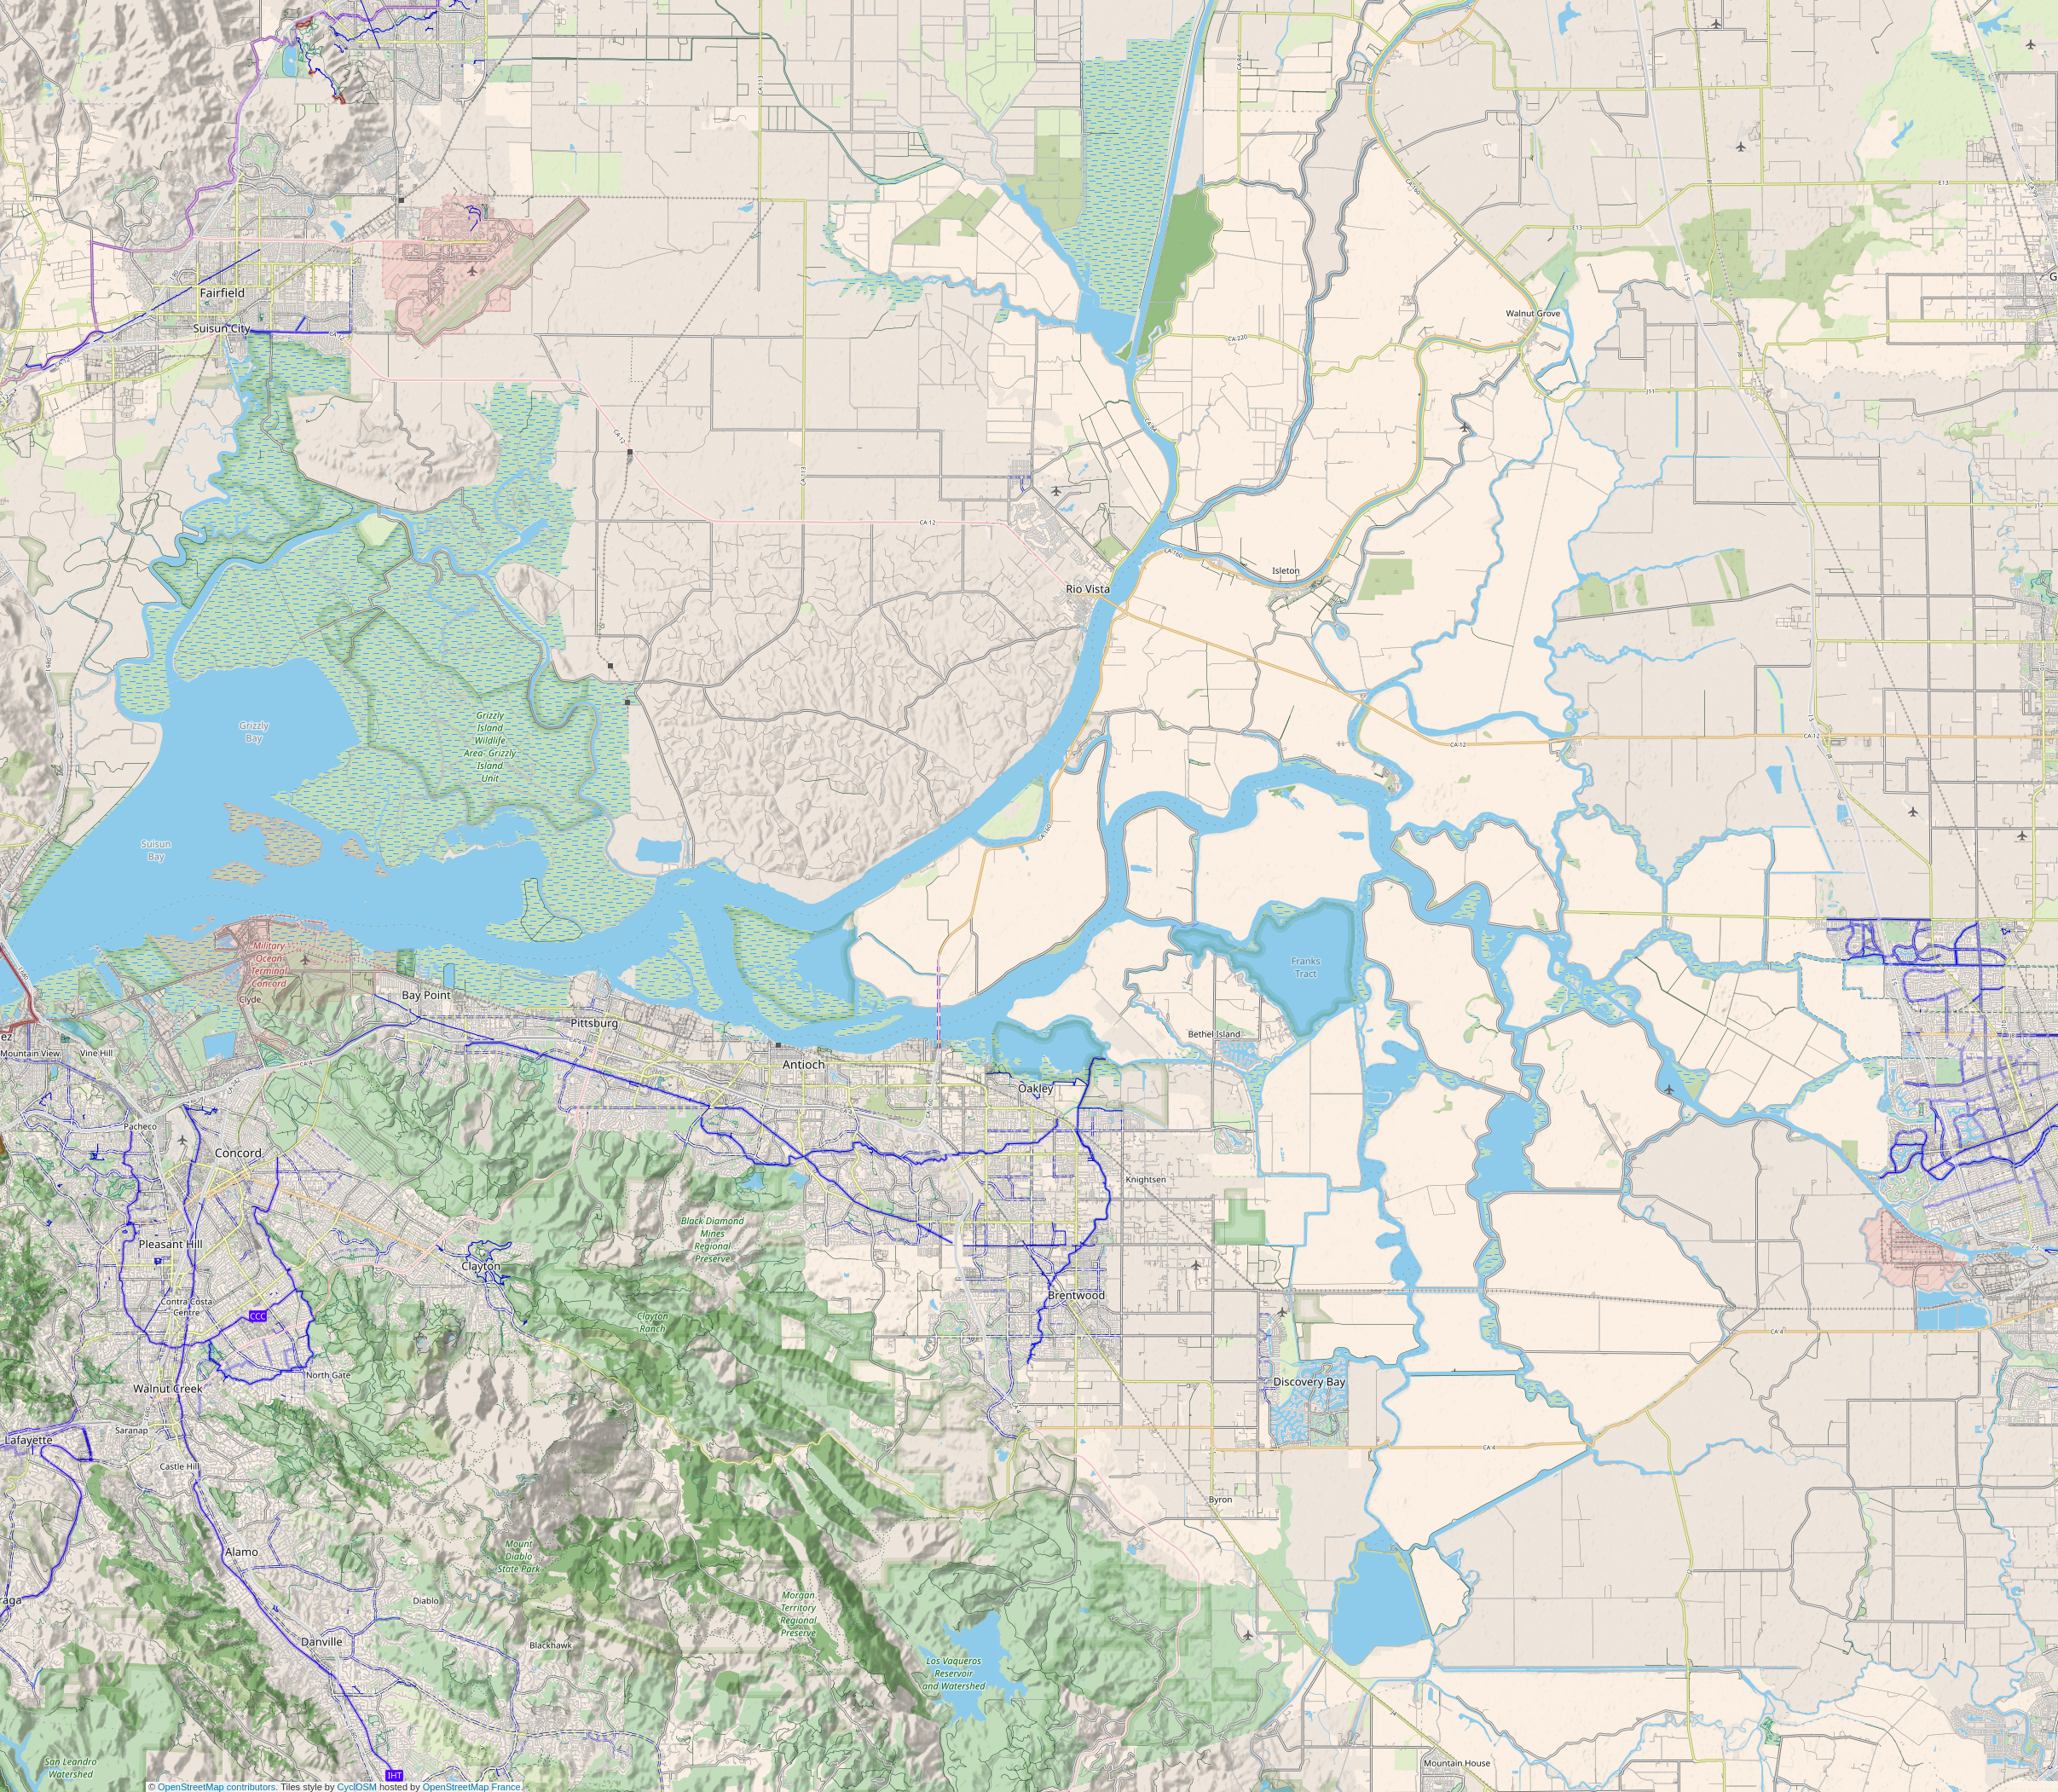 Suisun Bay is located in Sacramento-San Joaquin River Delta